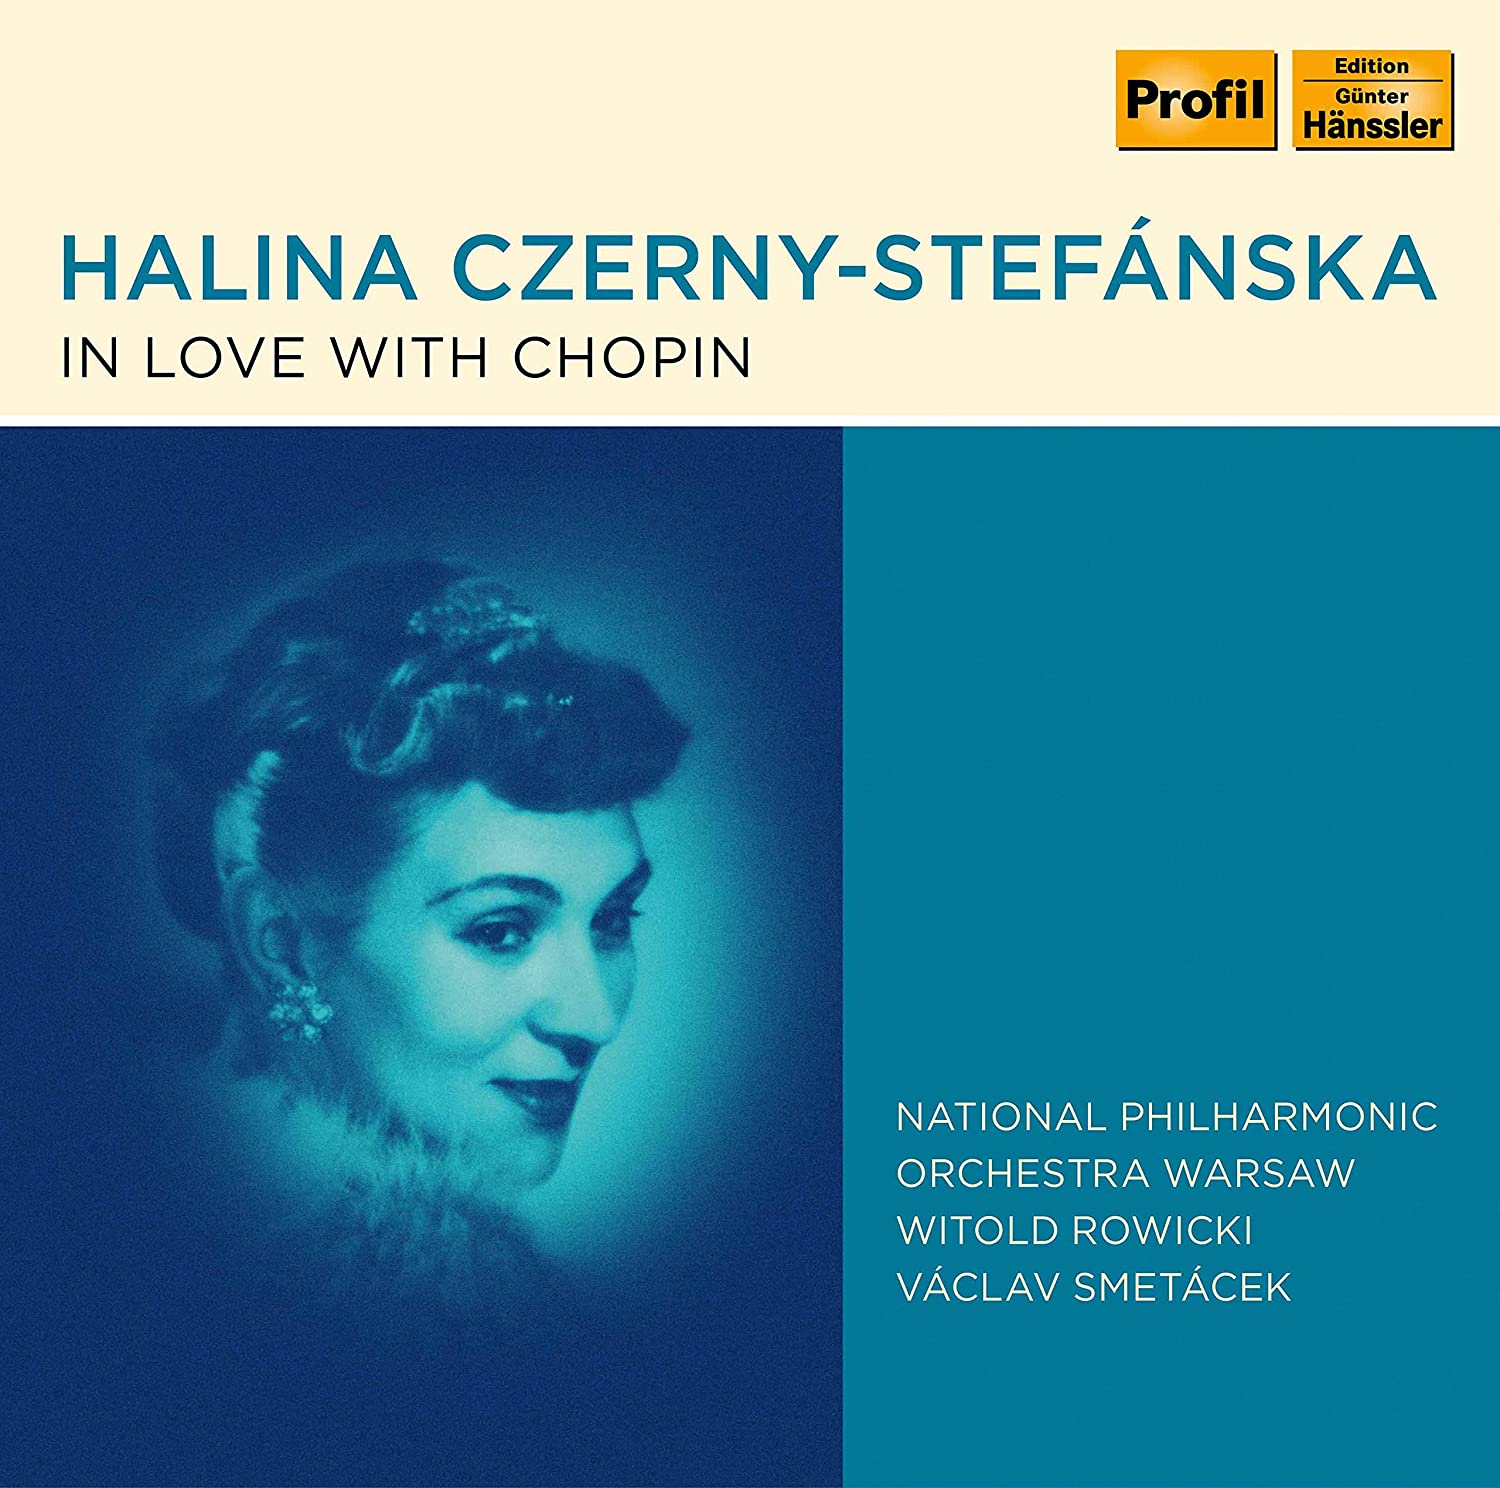 Audio Cd Halina Czerny-Stefanska: In Love With Chopin (4 Cd) NUOVO SIGILLATO, EDIZIONE DEL 06/05/2020 SUBITO DISPONIBILE